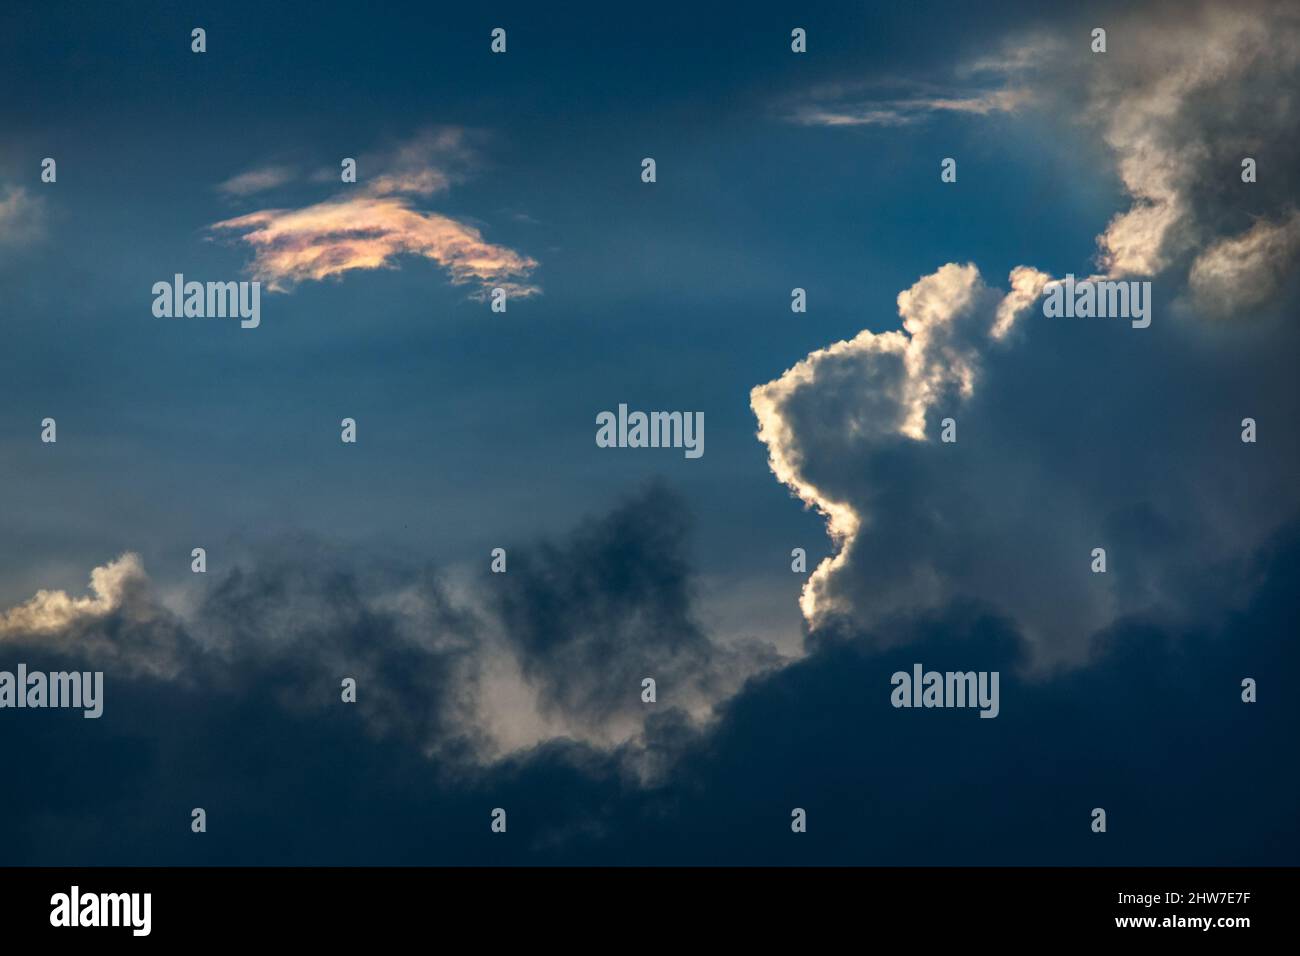 Altocumuluswolke, mit schillernder Wolke, neben der aufragenden Cumuluswolke, mit Stratocumuluswolken am Fuß, hinterleuchtet bei Sonnenuntergang, Johannesburg, Sou Stockfoto